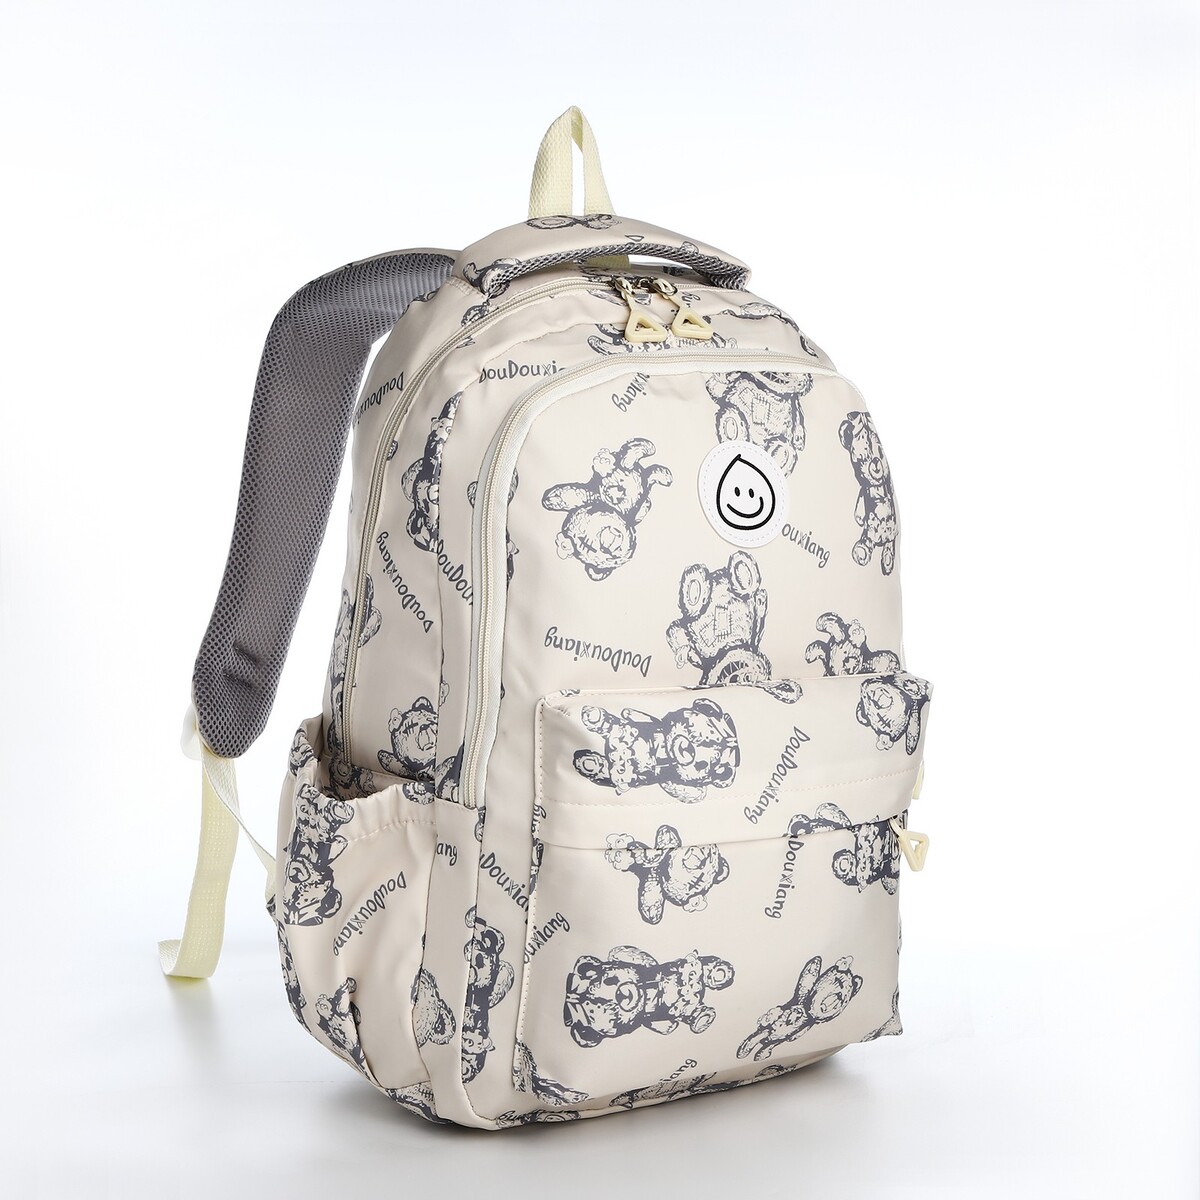 Рюкзак школьный из текстиля на молнии, 4 кармана, цвет бежевый рюкзак молодежный из текстиля 3 кармана белый бежевый